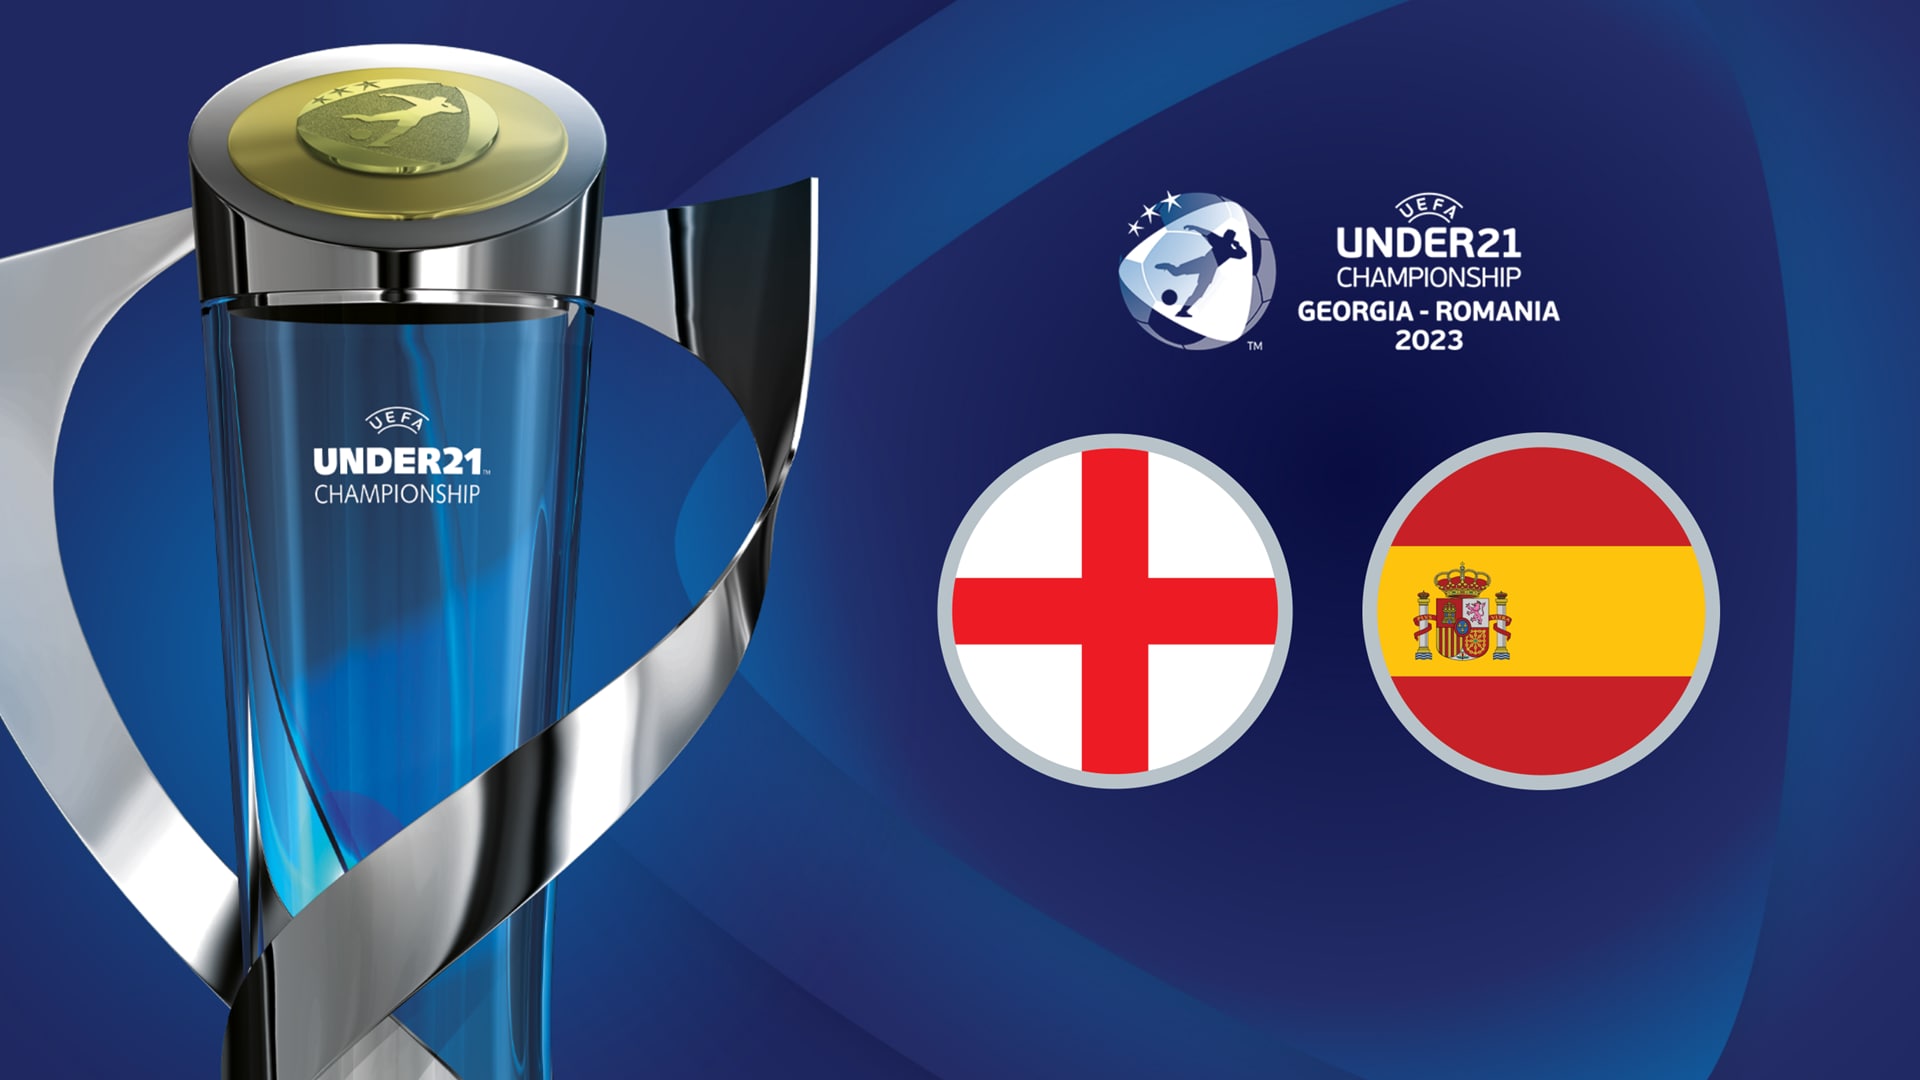 Campionato Under 21 UEFA Euro 2023: scopri chi sono i finalisti – Inghilterra v Spagna |  sotto i 21 anni